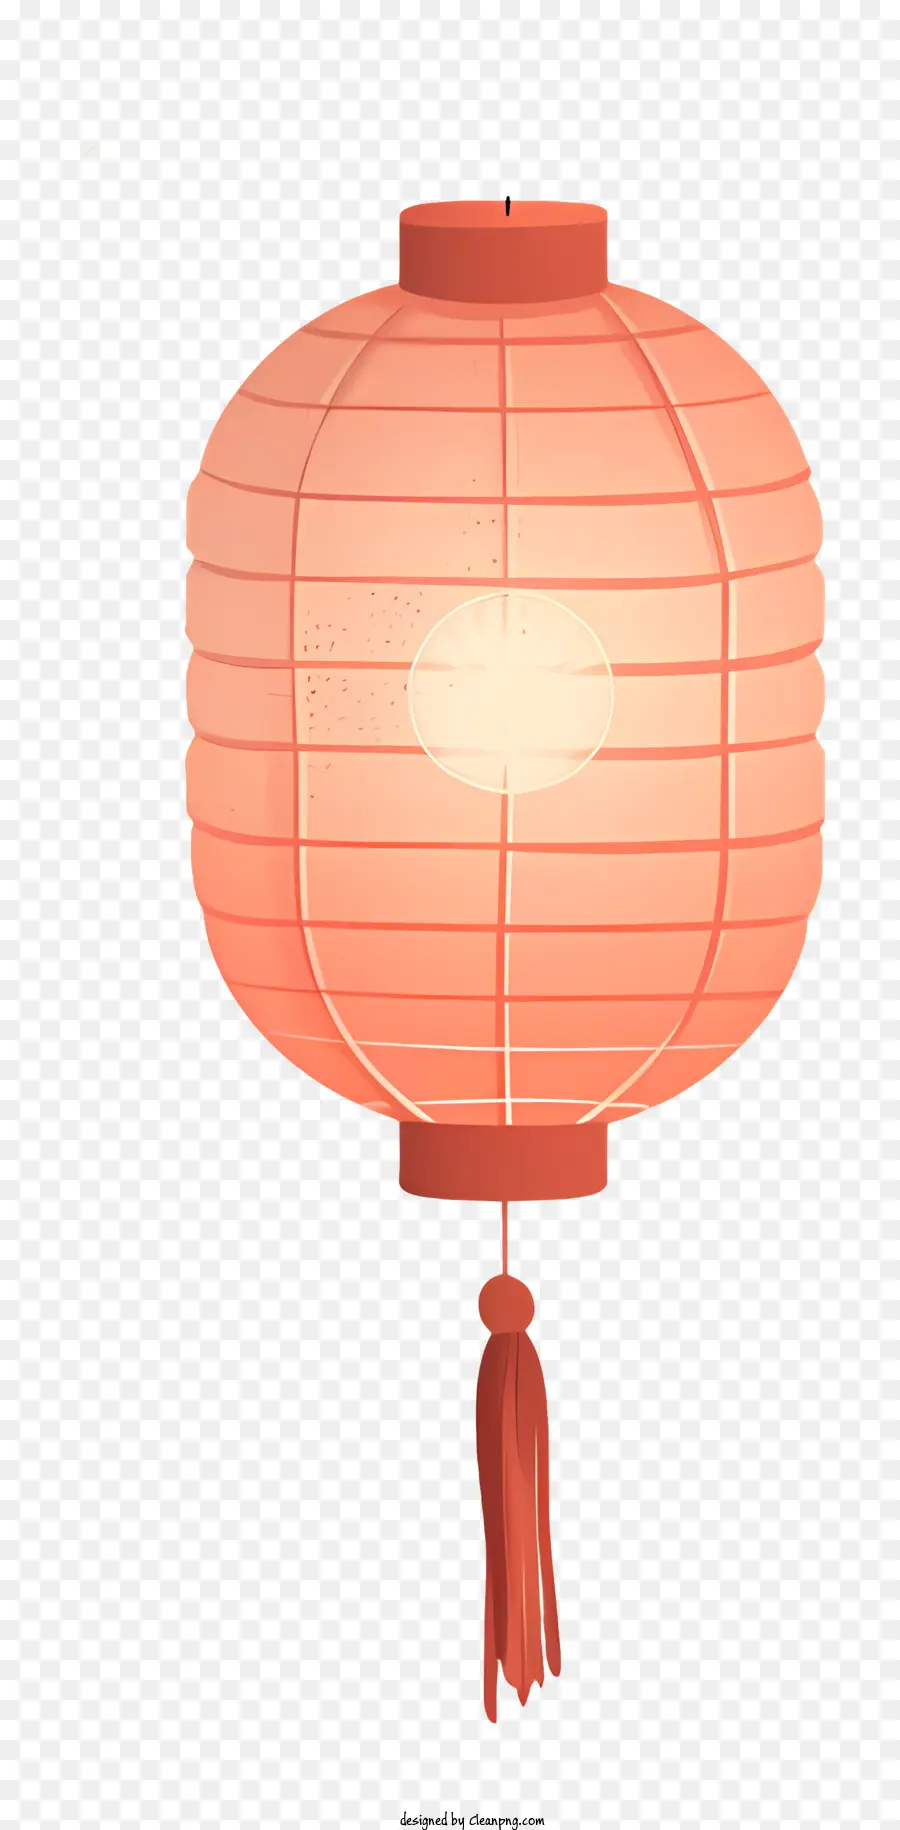 Lanterna tradizionale lanterna lanterna lanterna lanterna di lanterna di lanterna. - Swaying lanterna rossa con nappe sospese